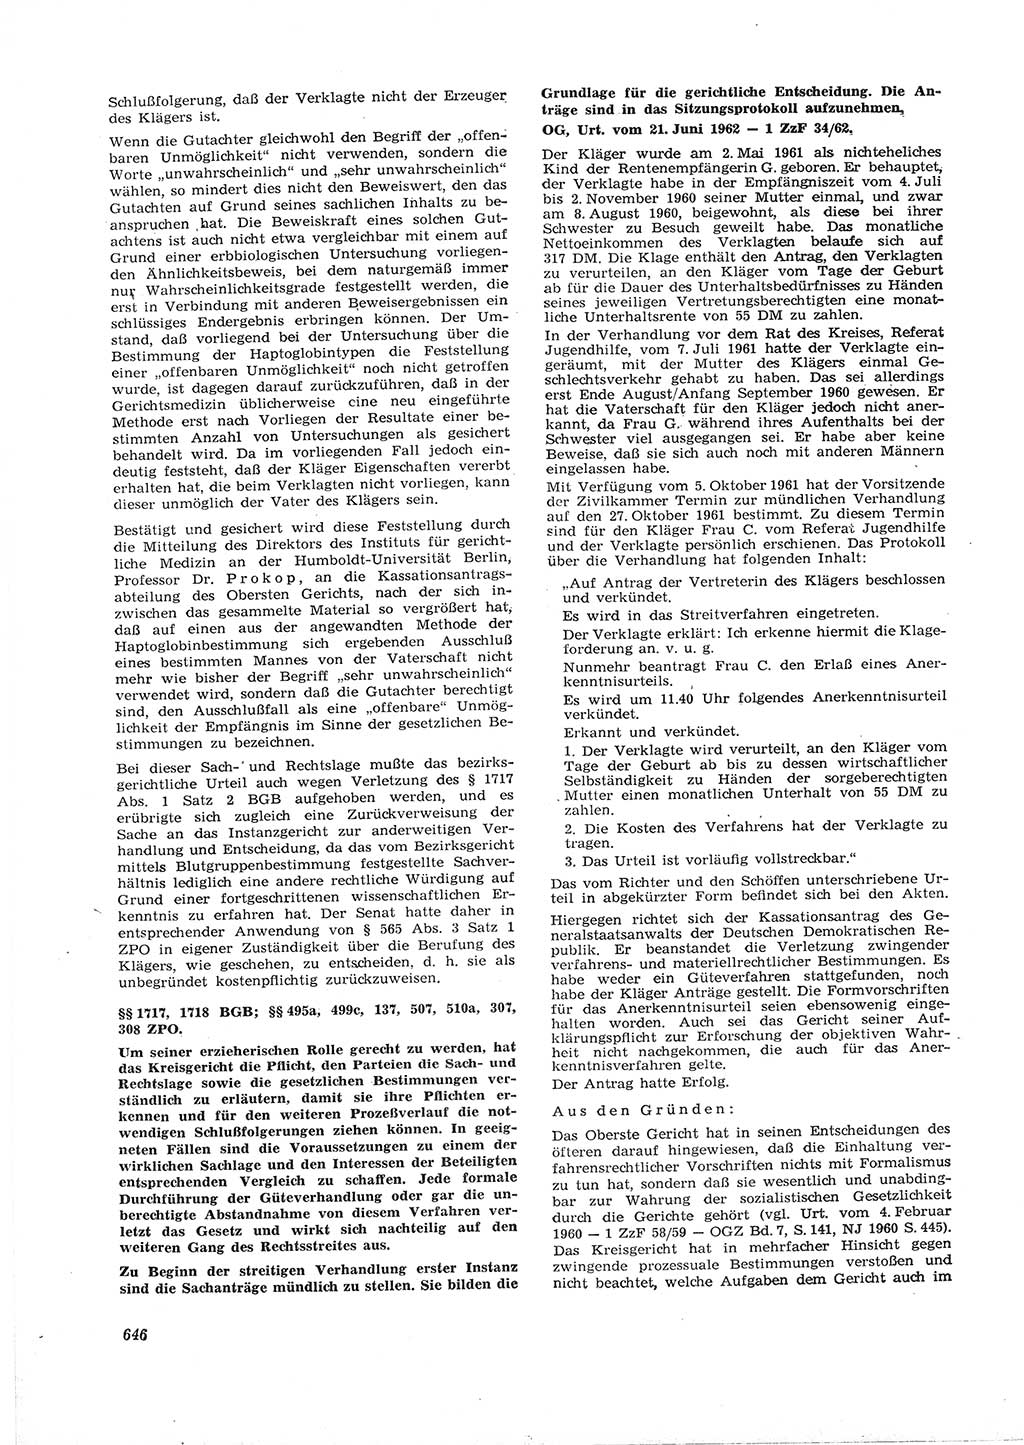 Neue Justiz (NJ), Zeitschrift für Recht und Rechtswissenschaft [Deutsche Demokratische Republik (DDR)], 16. Jahrgang 1962, Seite 646 (NJ DDR 1962, S. 646)